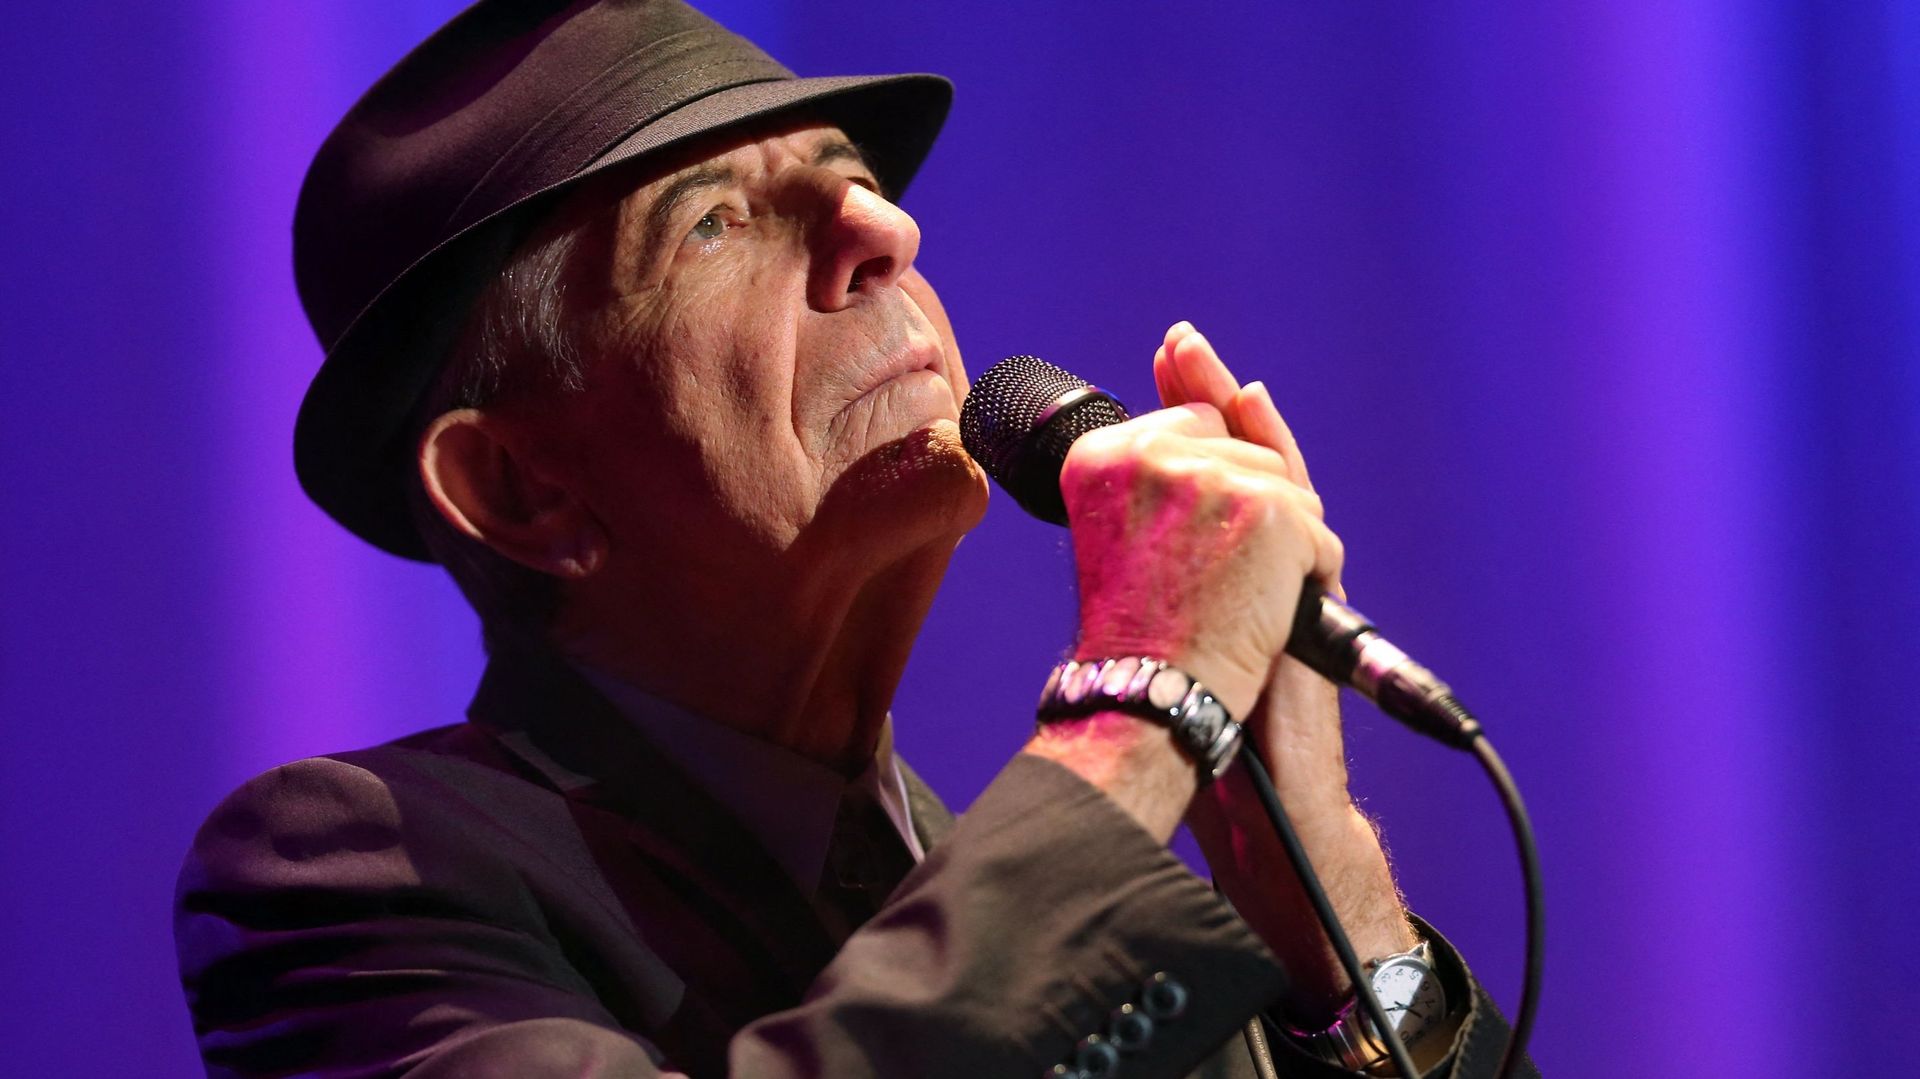 La chanson culte "Hallelujah" de Leonard Cohen fut ignorée à sa sortie il y a bientôt quarante ans.